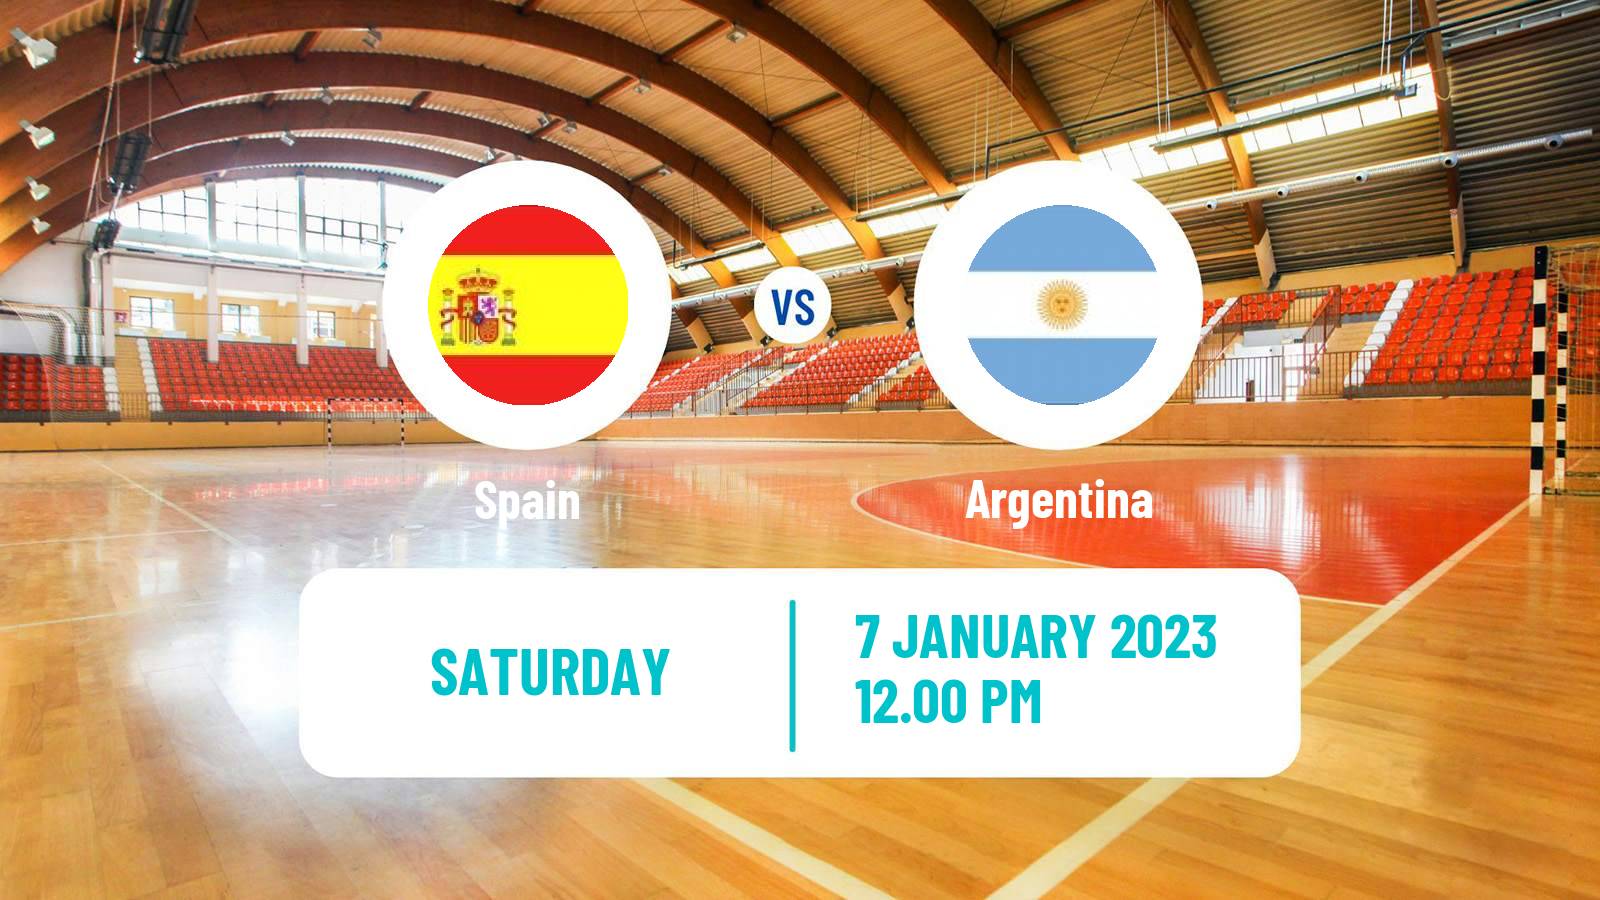 Handball Friendly International Handball Spain - Argentina